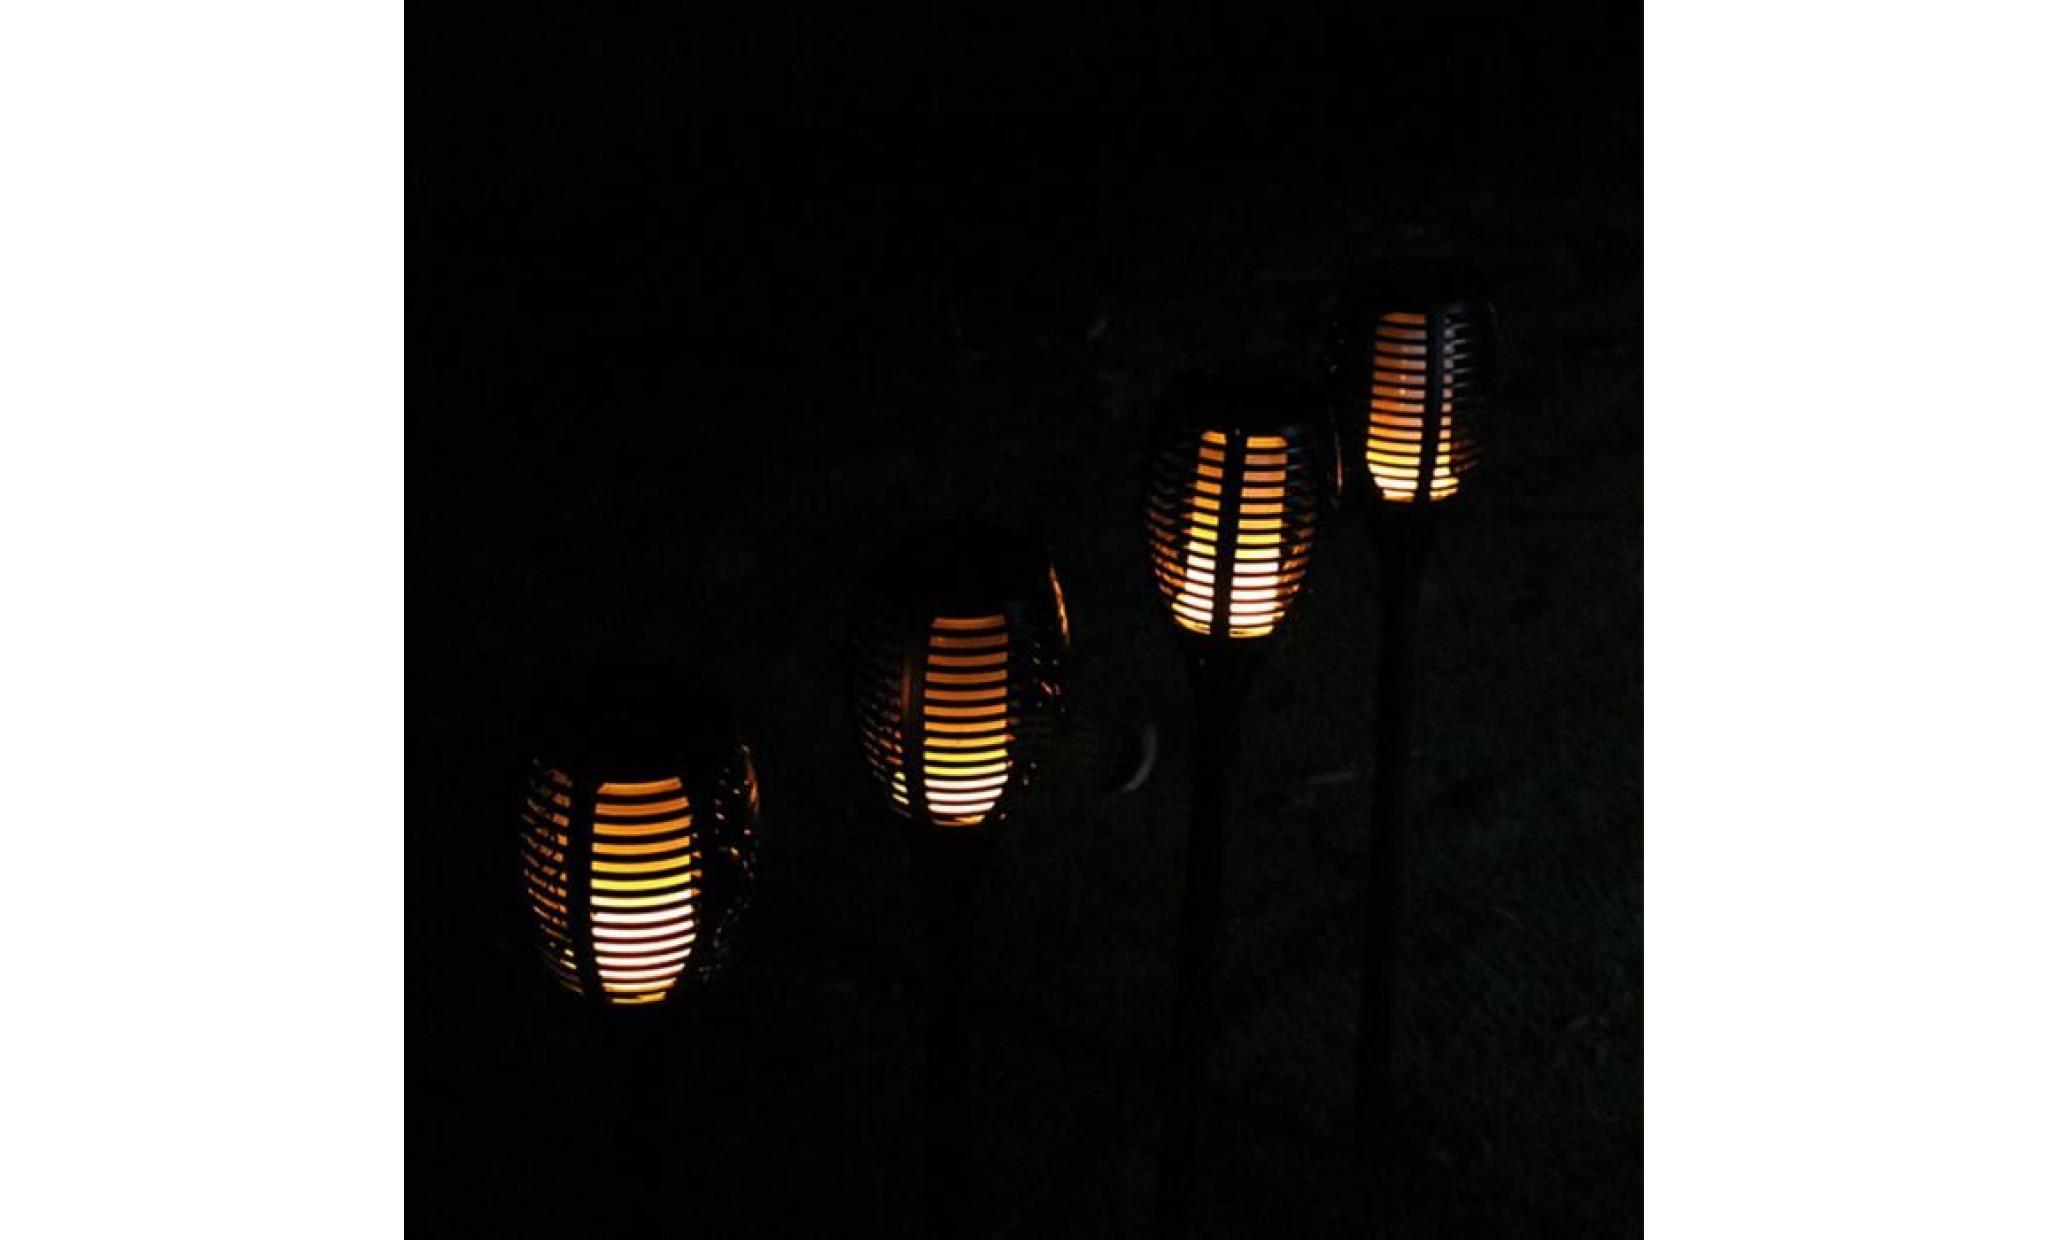 borne solaire 1 pcs solaire extérieure imperméable À l'eau lampes de lanterne lamp pathways yard patio #la 110 pas cher